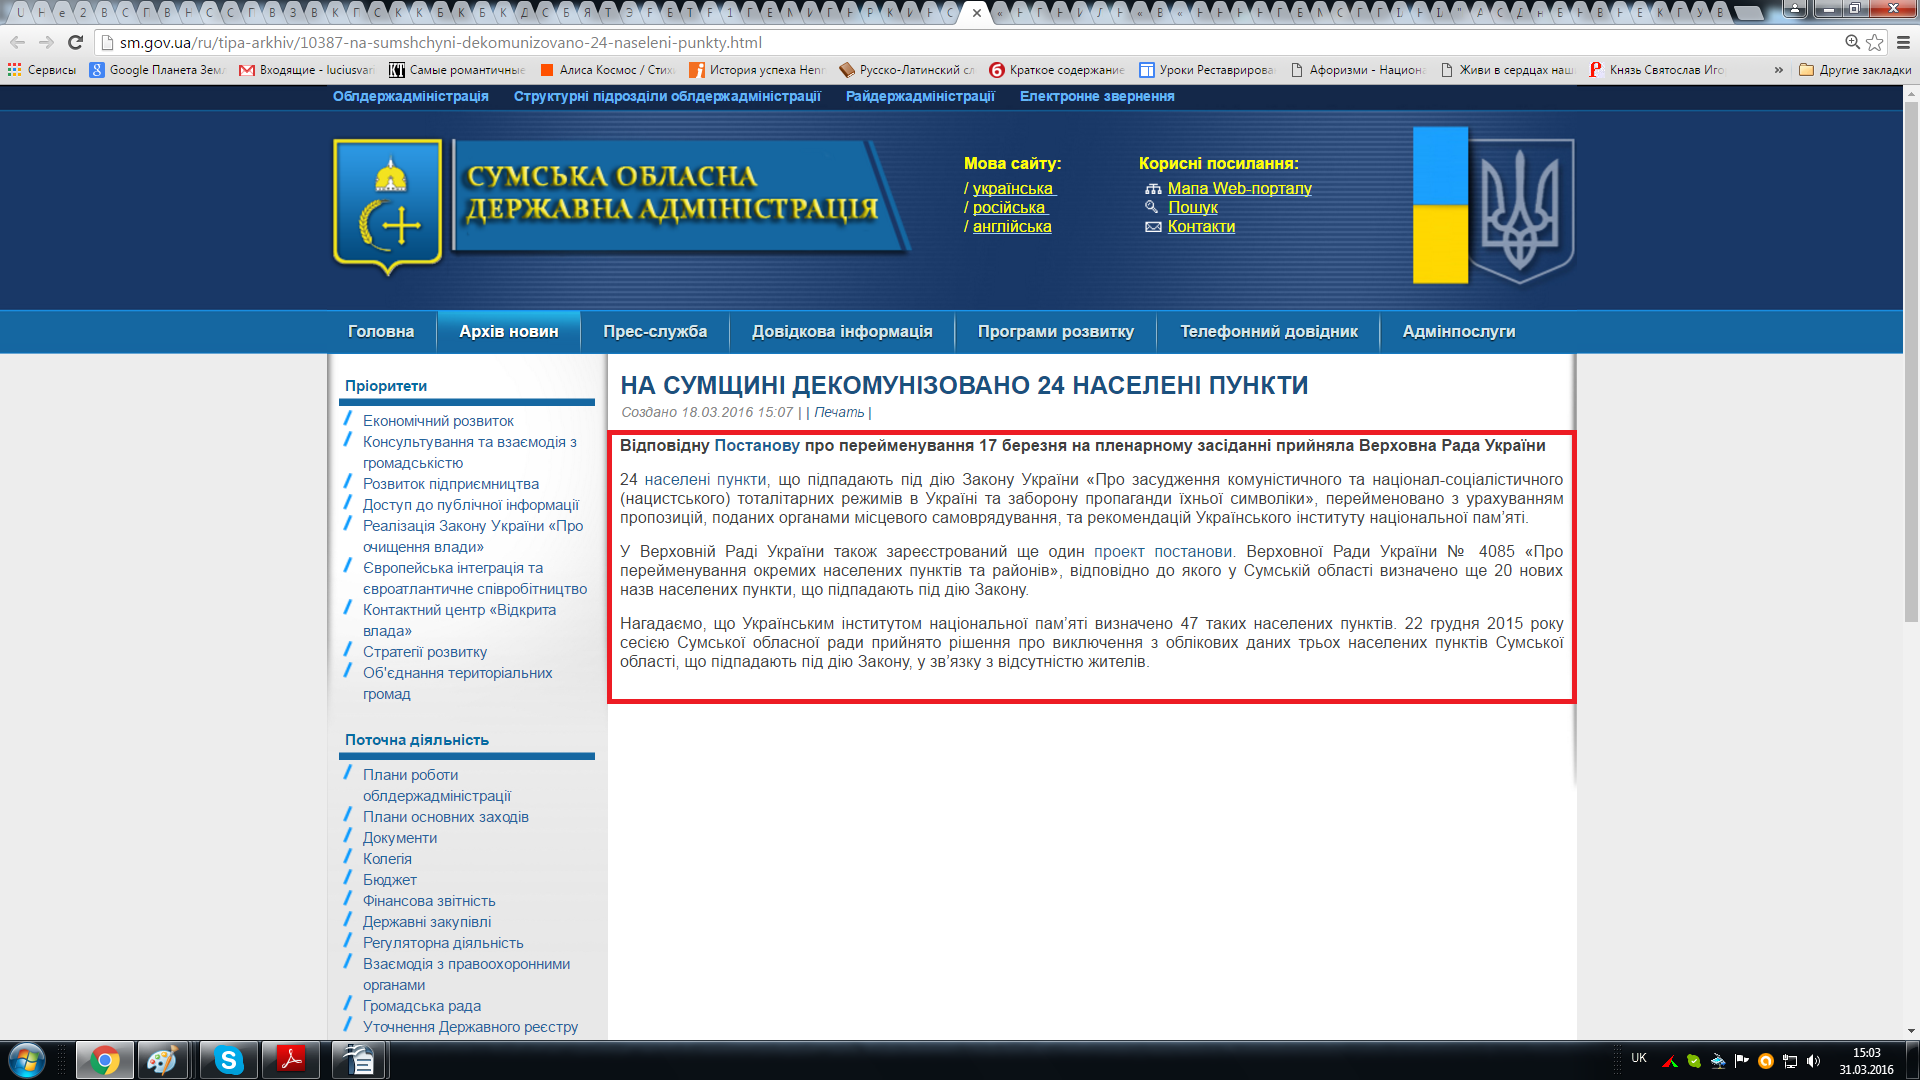 http://sm.gov.ua/ru/tipa-arkhiv/10387-na-sumshchyni-dekomunizovano-24-naseleni-punkty.html